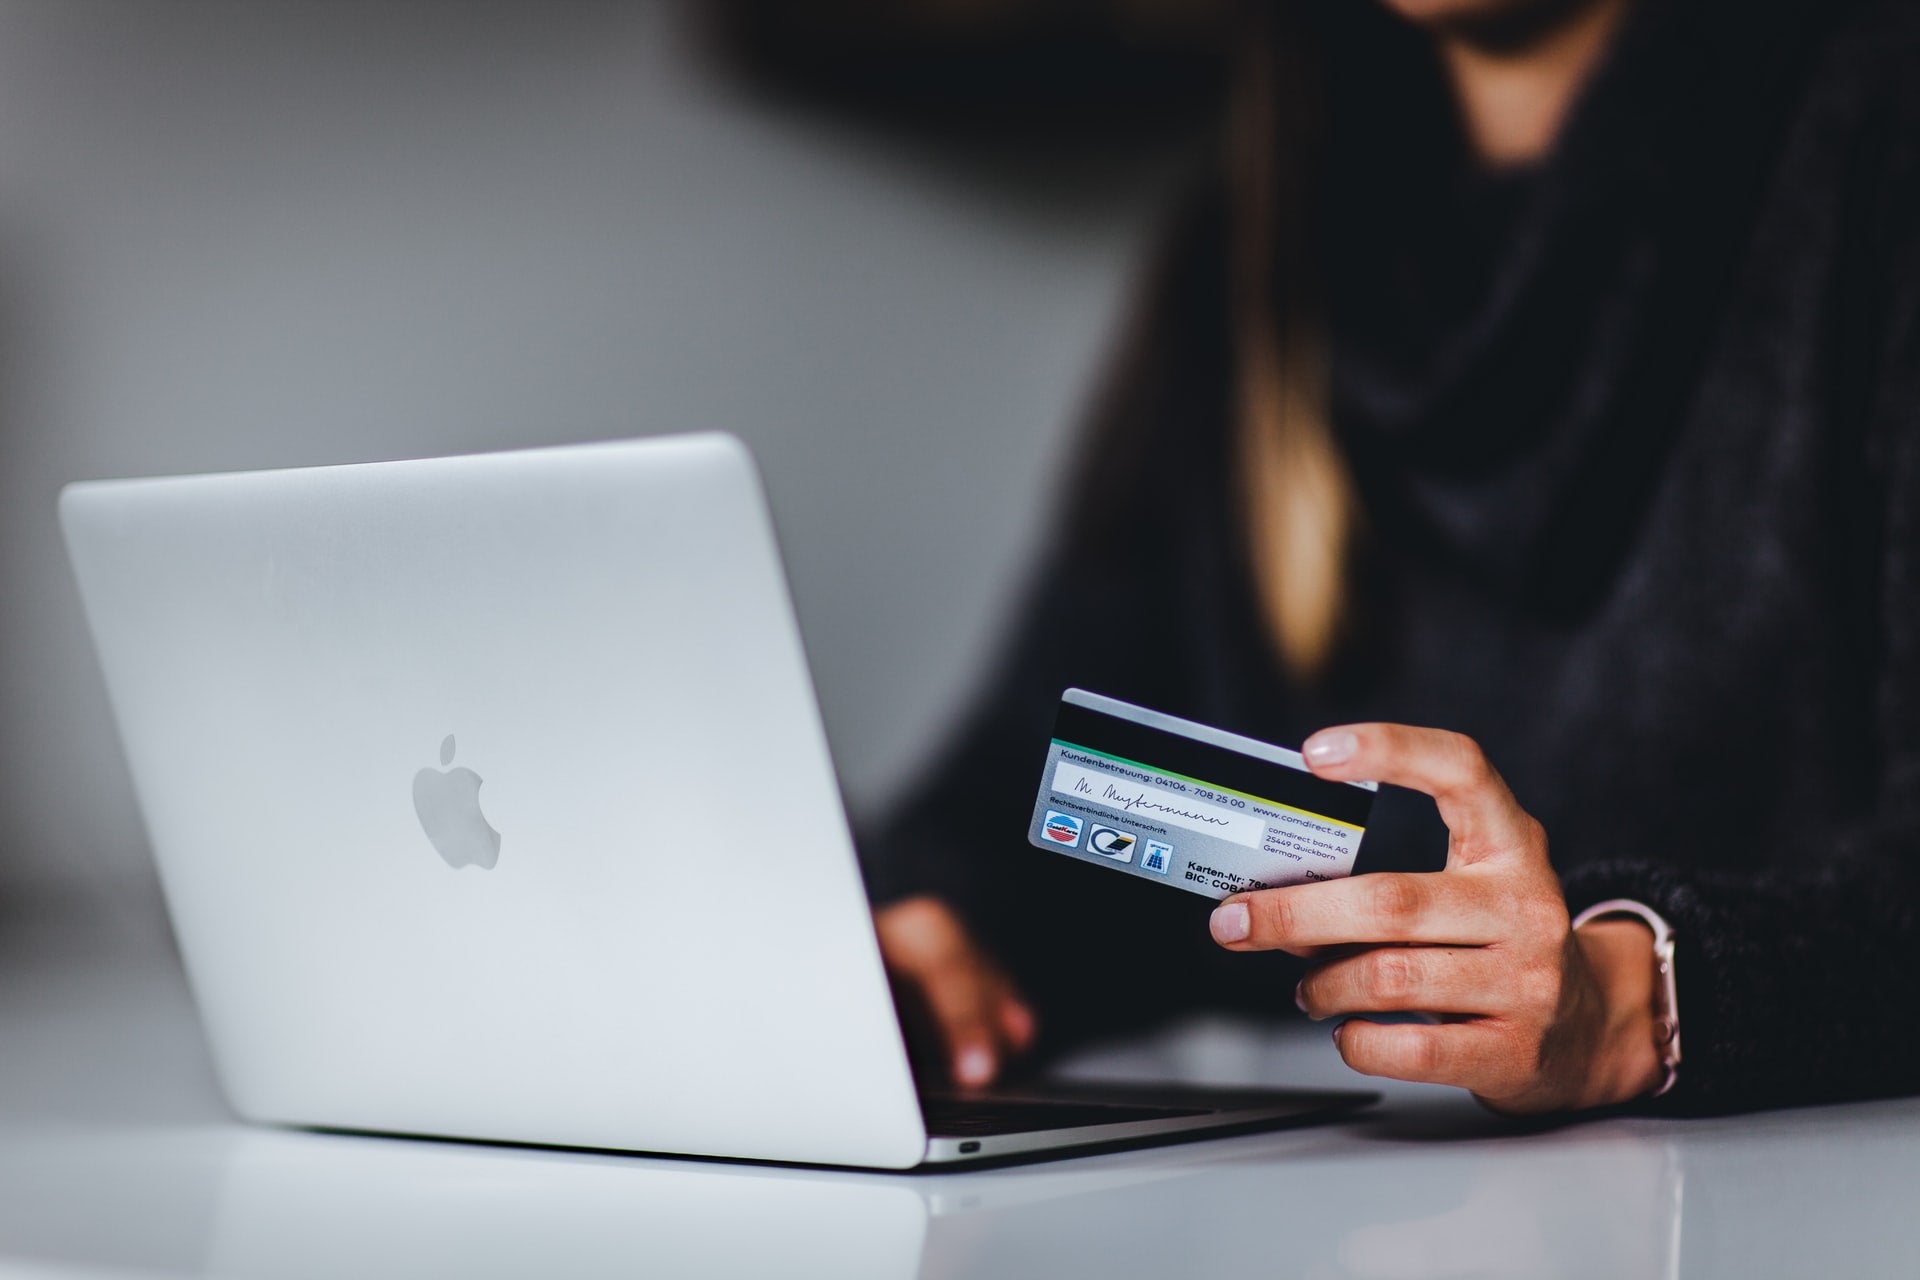 personne regardant un macbook, effectuant un achat en ligne avec une carte de crédit dans la main gauche